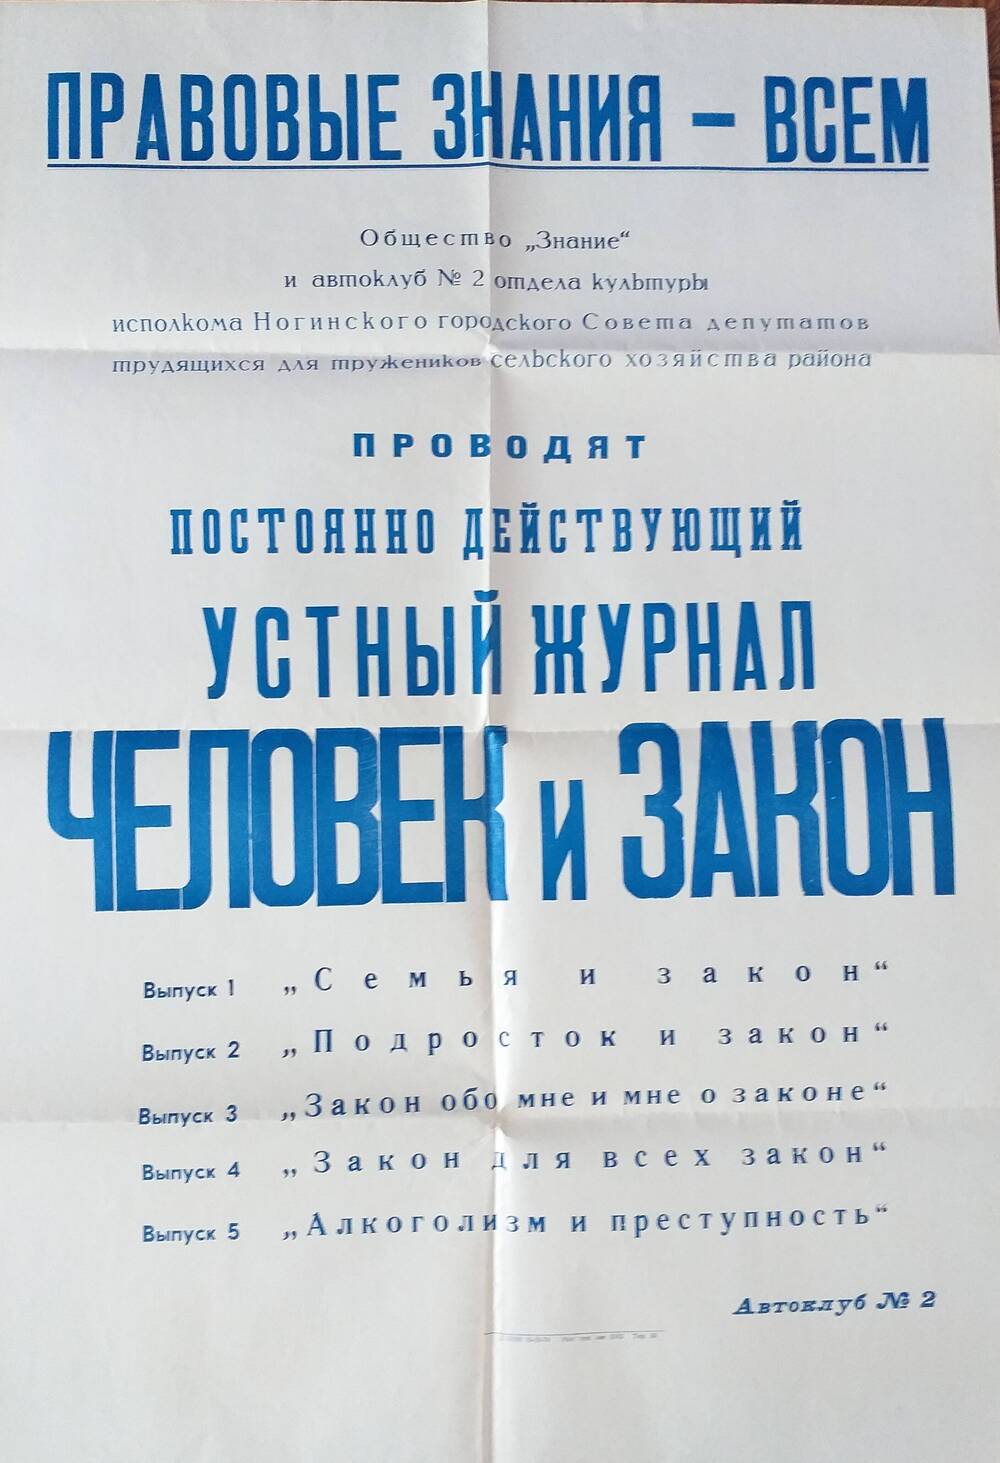 Афиша общества Знание и отдела культуры о проведении устного журнала Человек и закон, 1974 год.